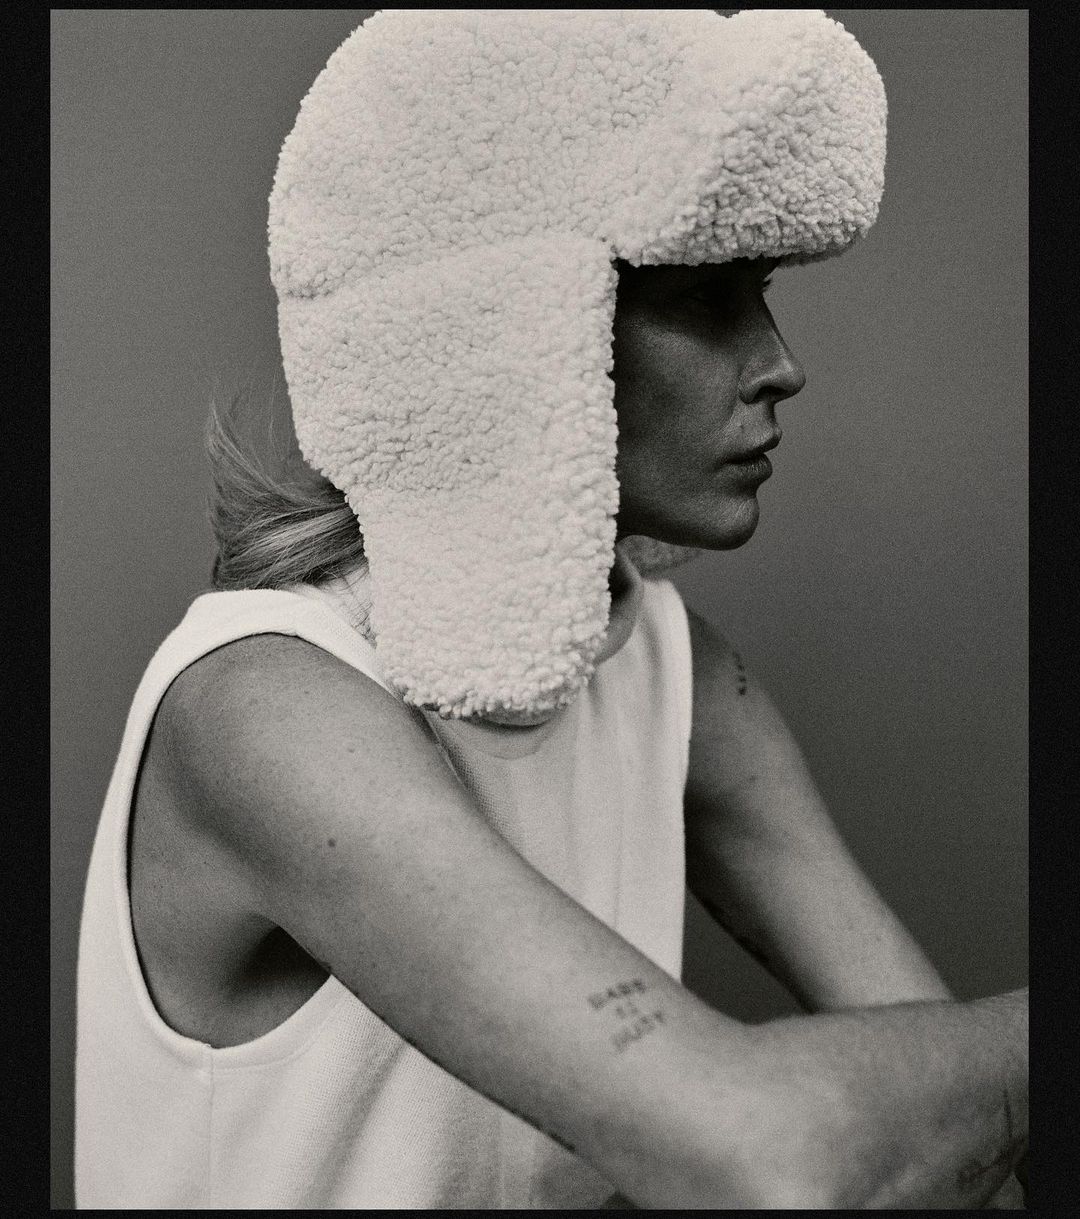 модный головной убор зима 2021 2022 теплое на голову шапка ушанка овчина белая